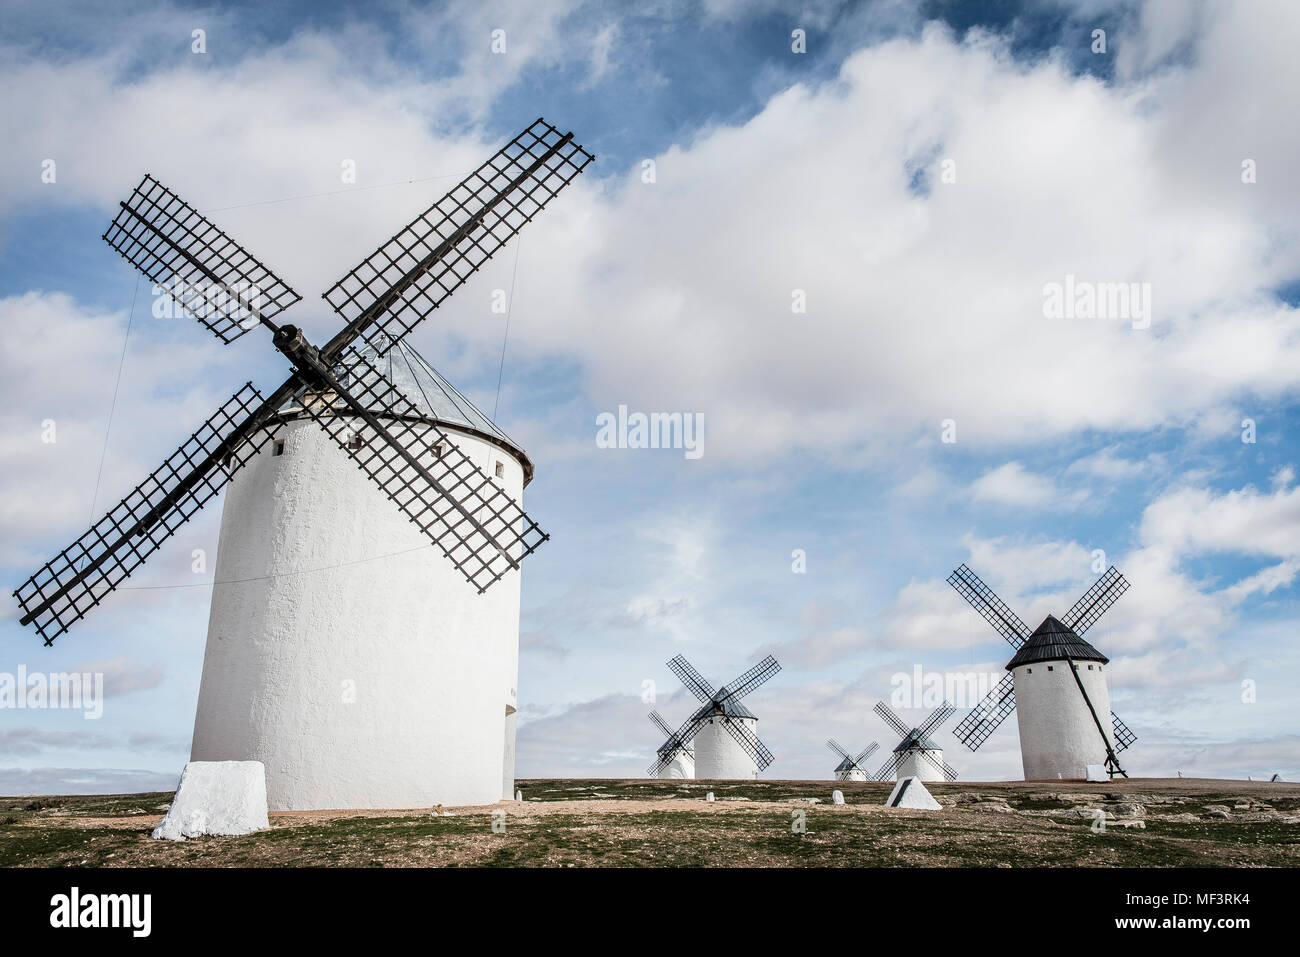 L'Espagne, Castilla-La Mancha, Campo de Criptana, moulins à vent Banque D'Images